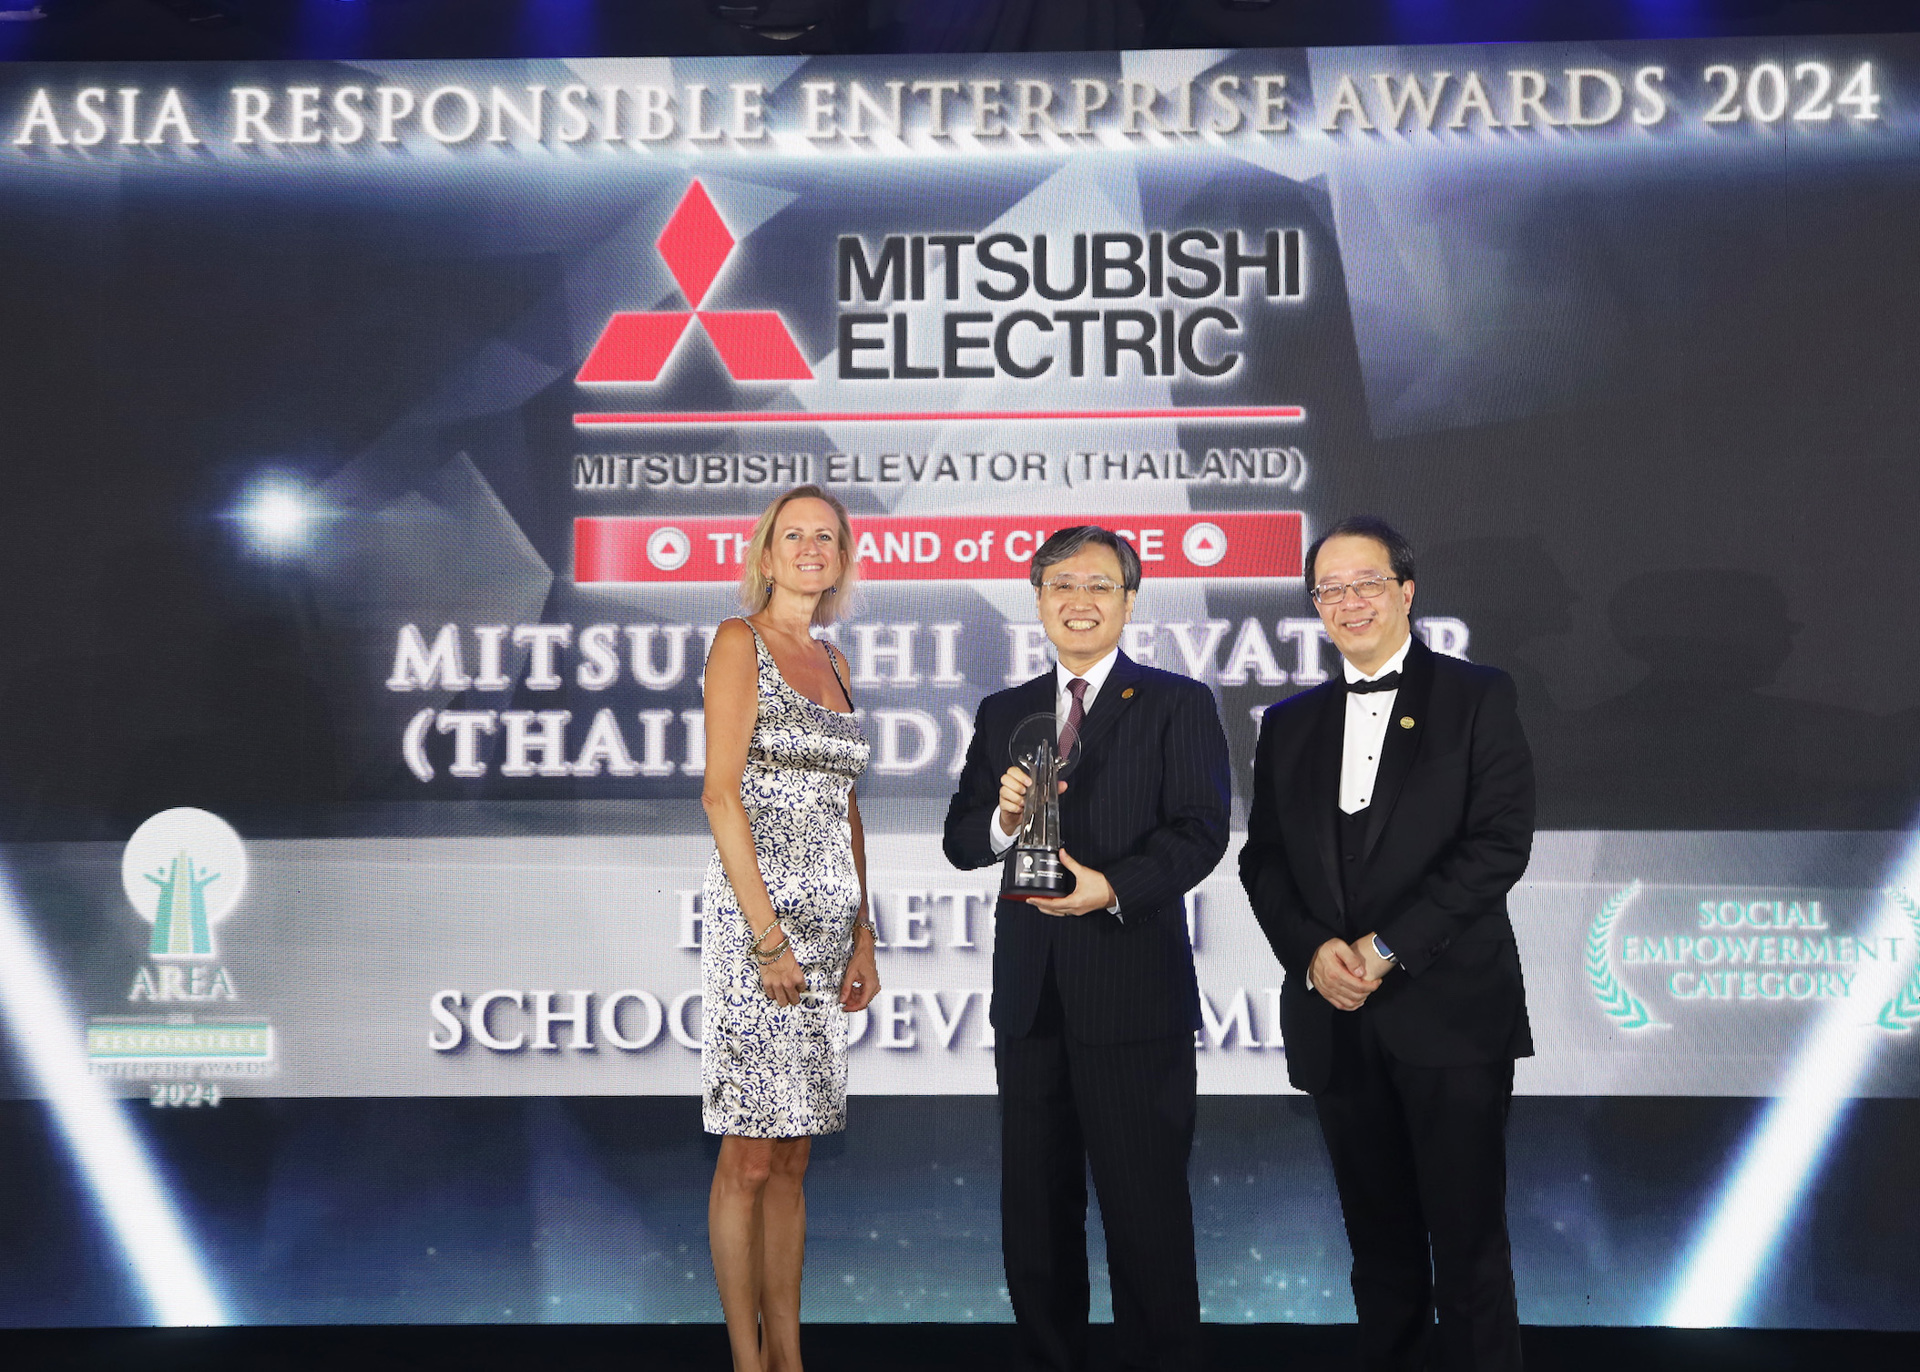 Mitsubishi Elevator Thái Lan Nhận Giải Thưởng Doanh nghiệp Trách nghiệm châu Á 2024 (Asia Responsible Enterprise Awards 2024)